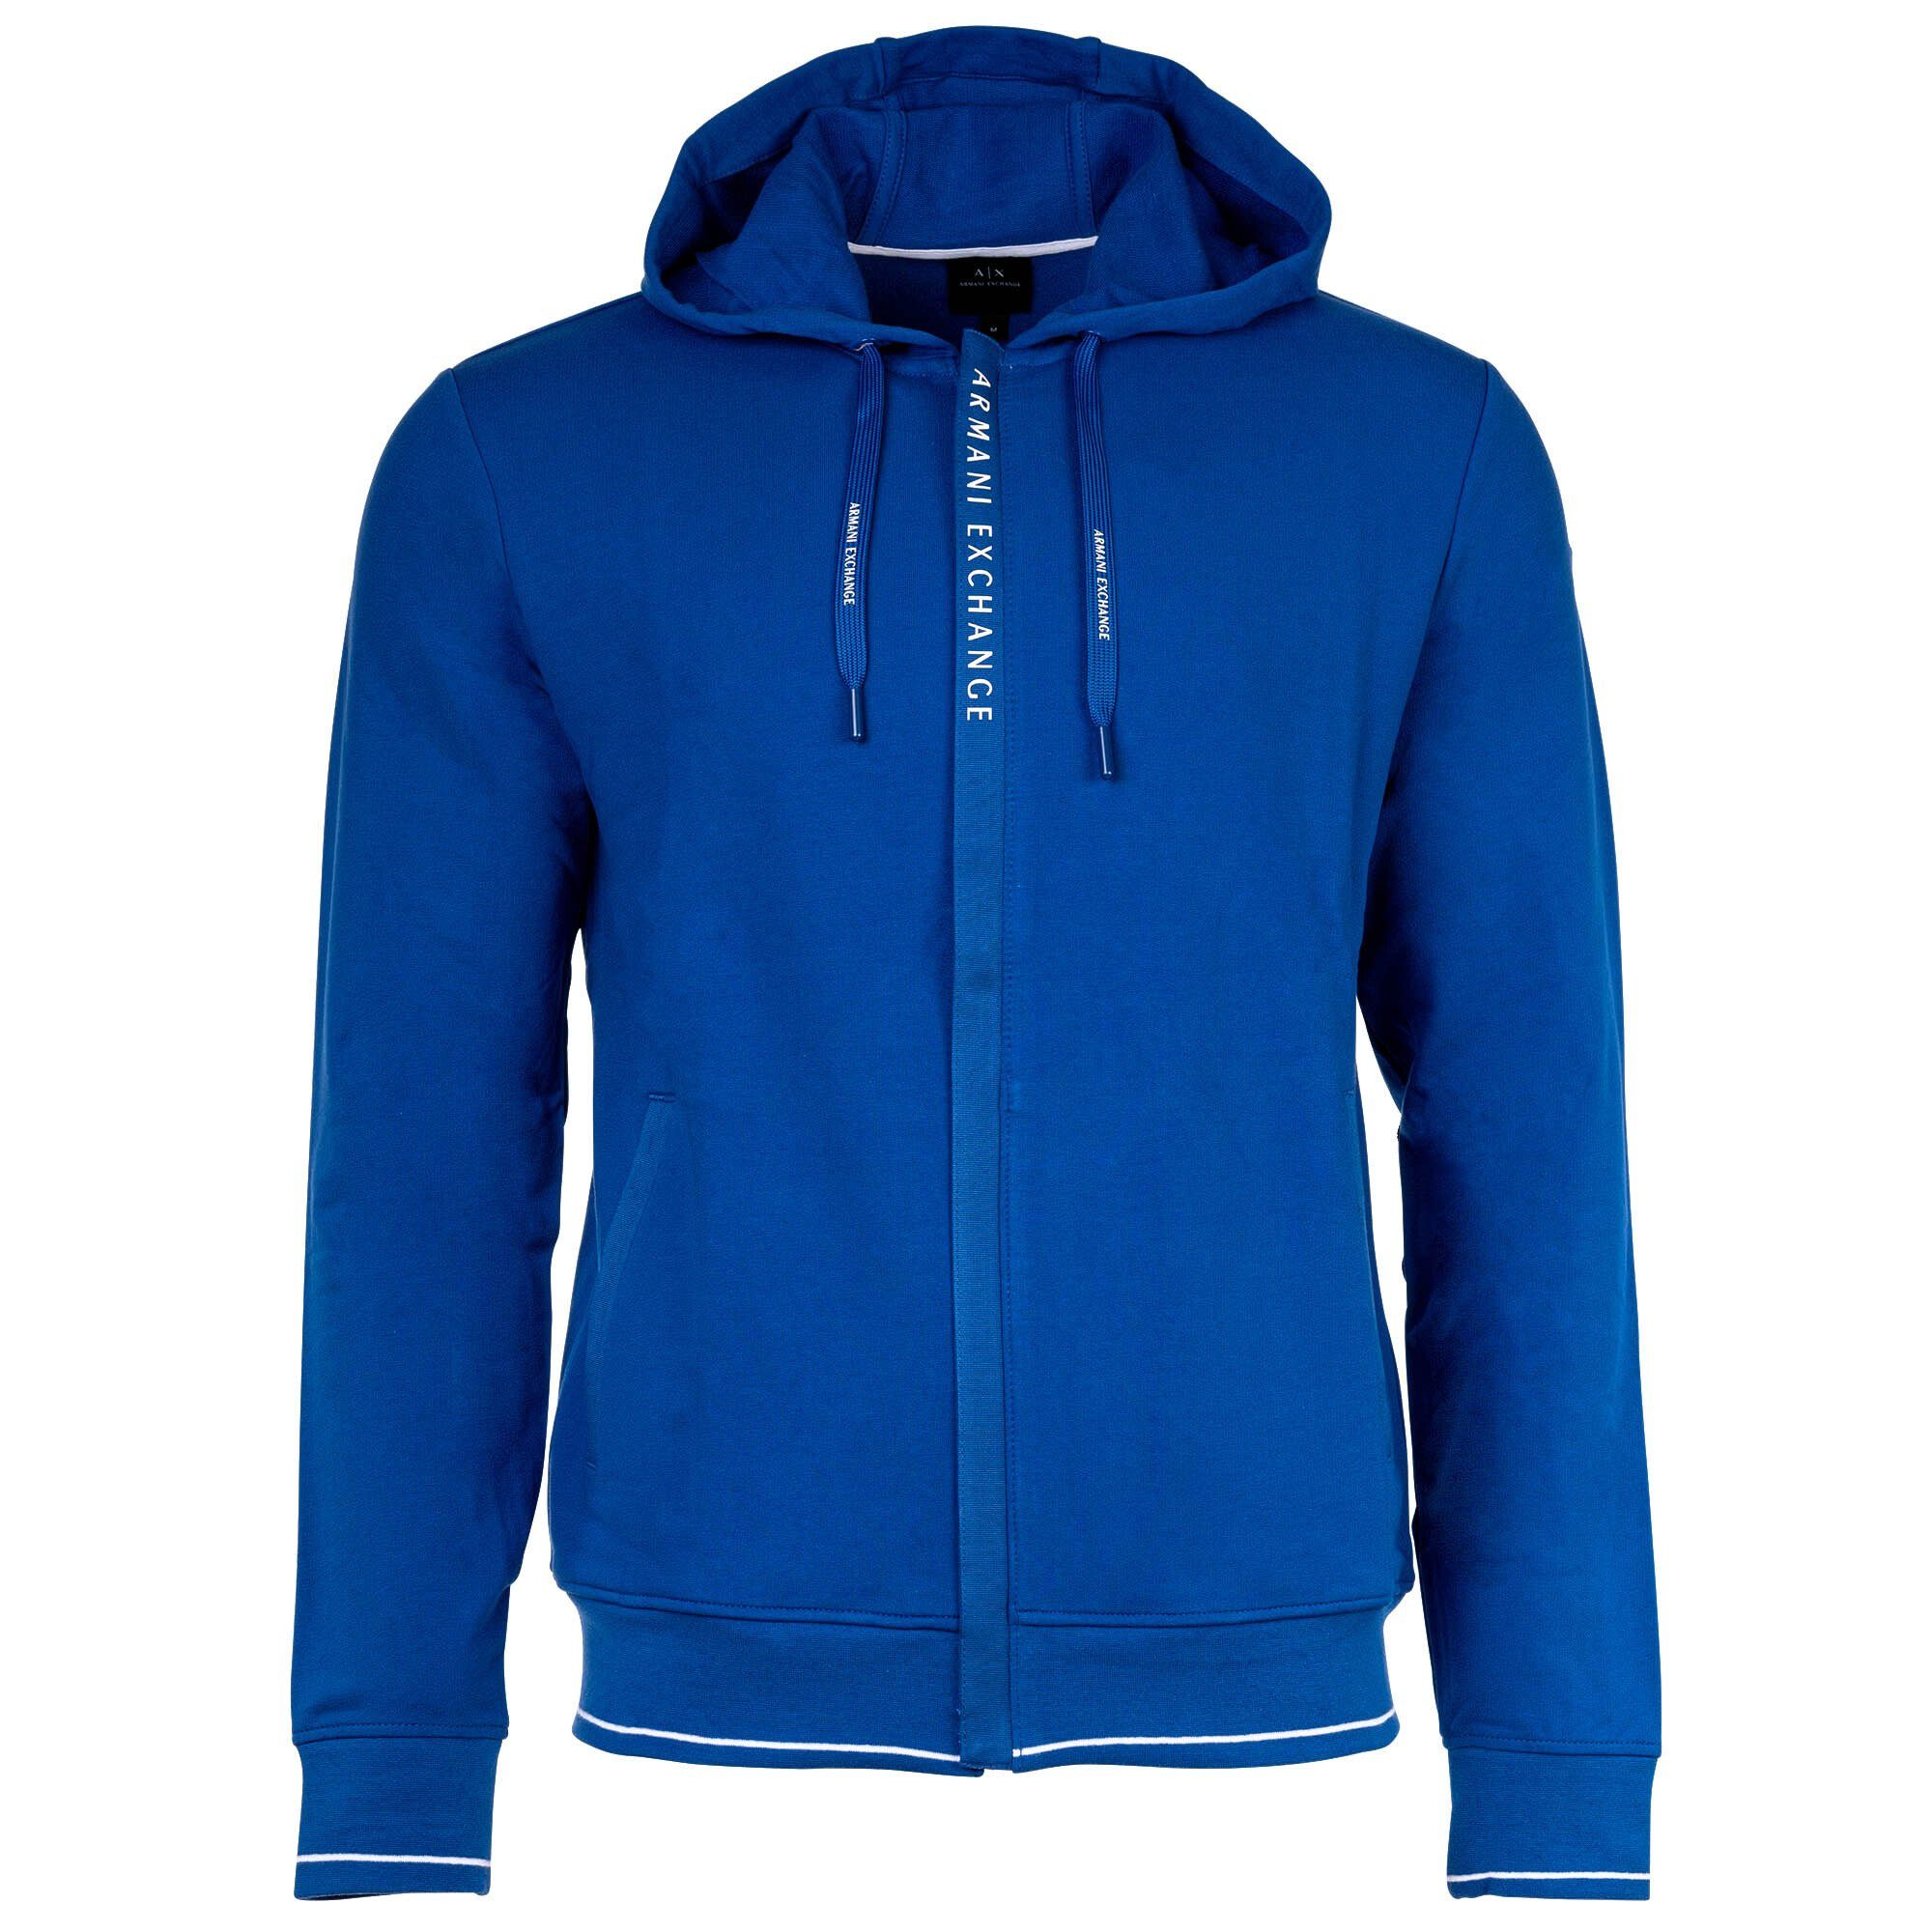 ARMANI EXCHANGE Sweatshirt Herren Jacke - Sweatshirtjacke, Baumwolle, Logo Blau